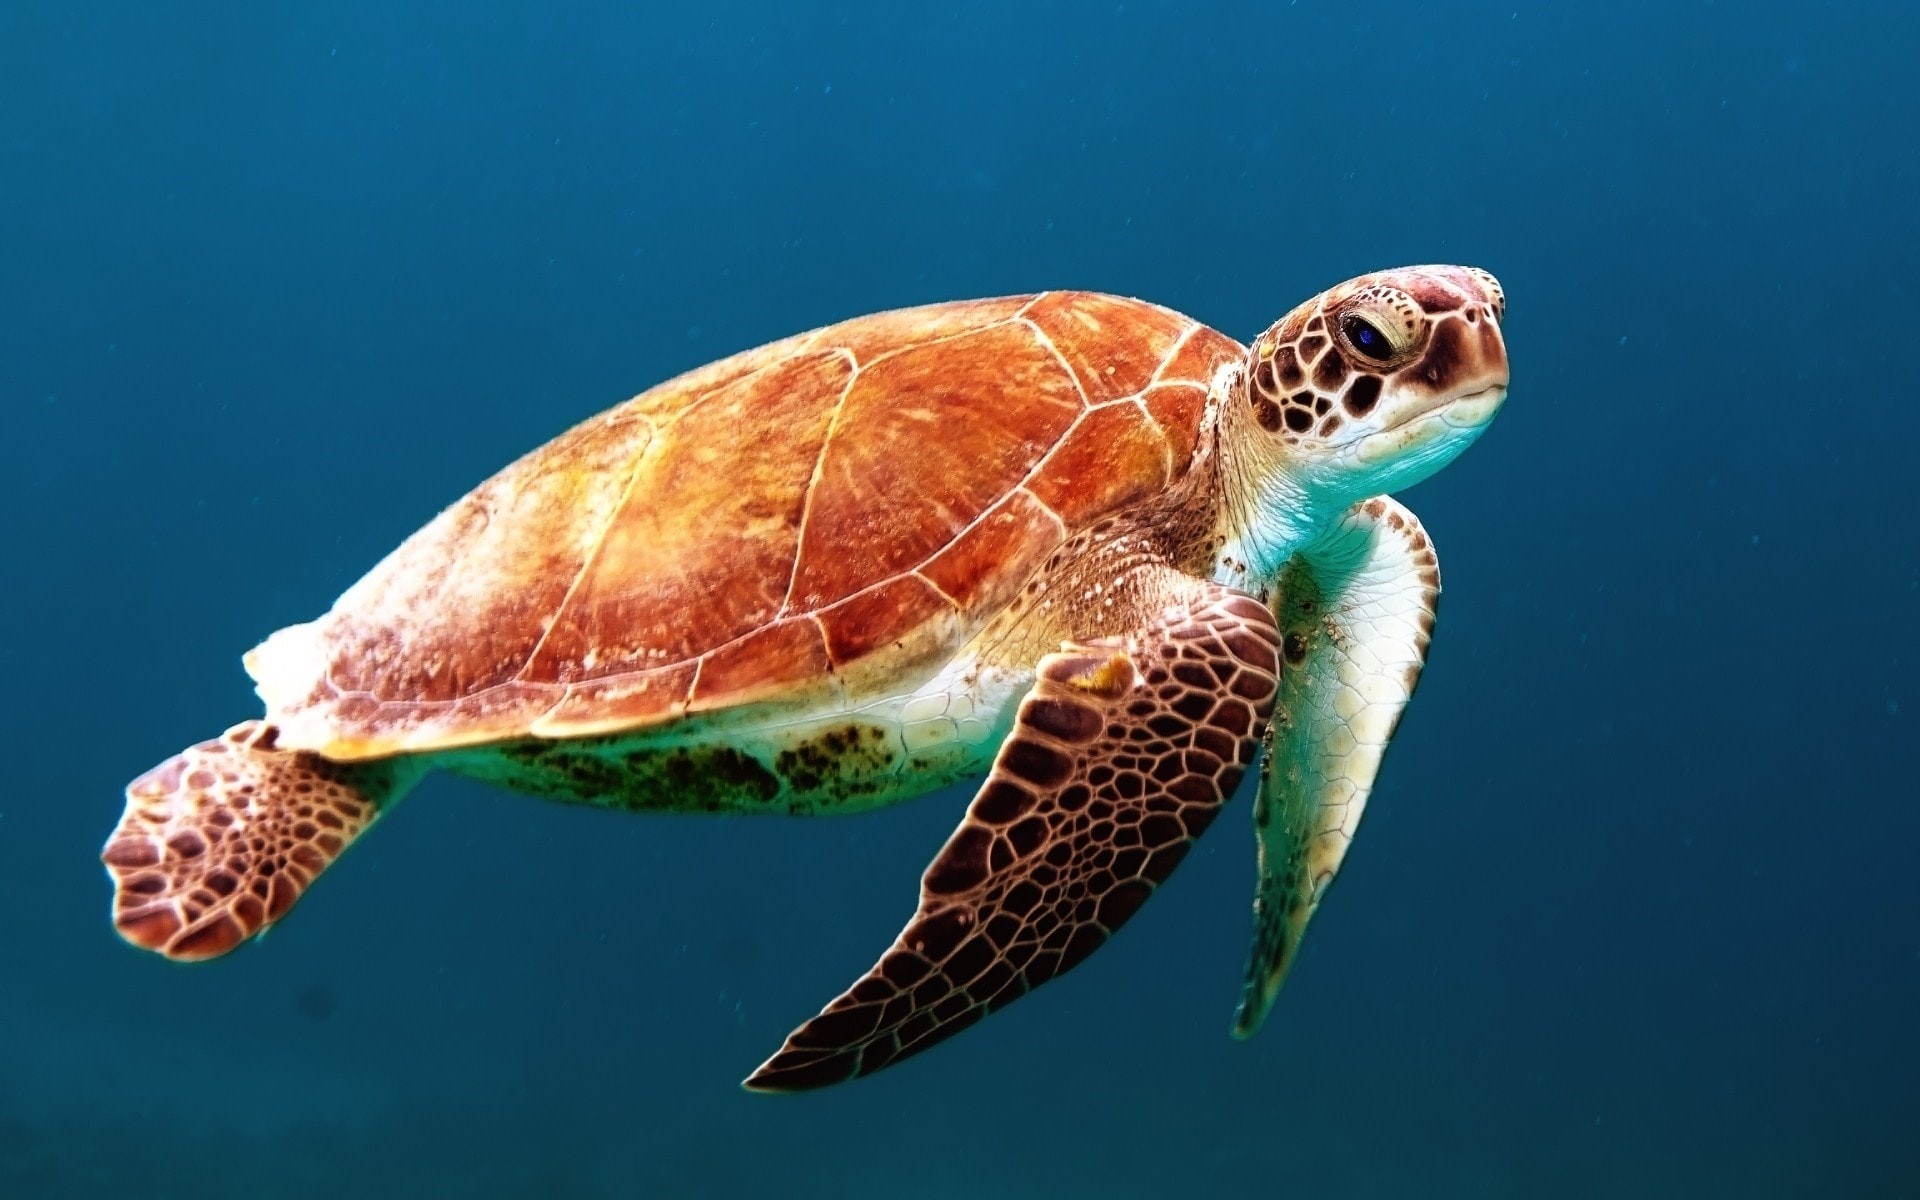 Tartarugas marinhas conseguem retardar (e até pausar) o envelhecimento, aponta estudo (Foto: Wexor Tmg/ Unsplash)